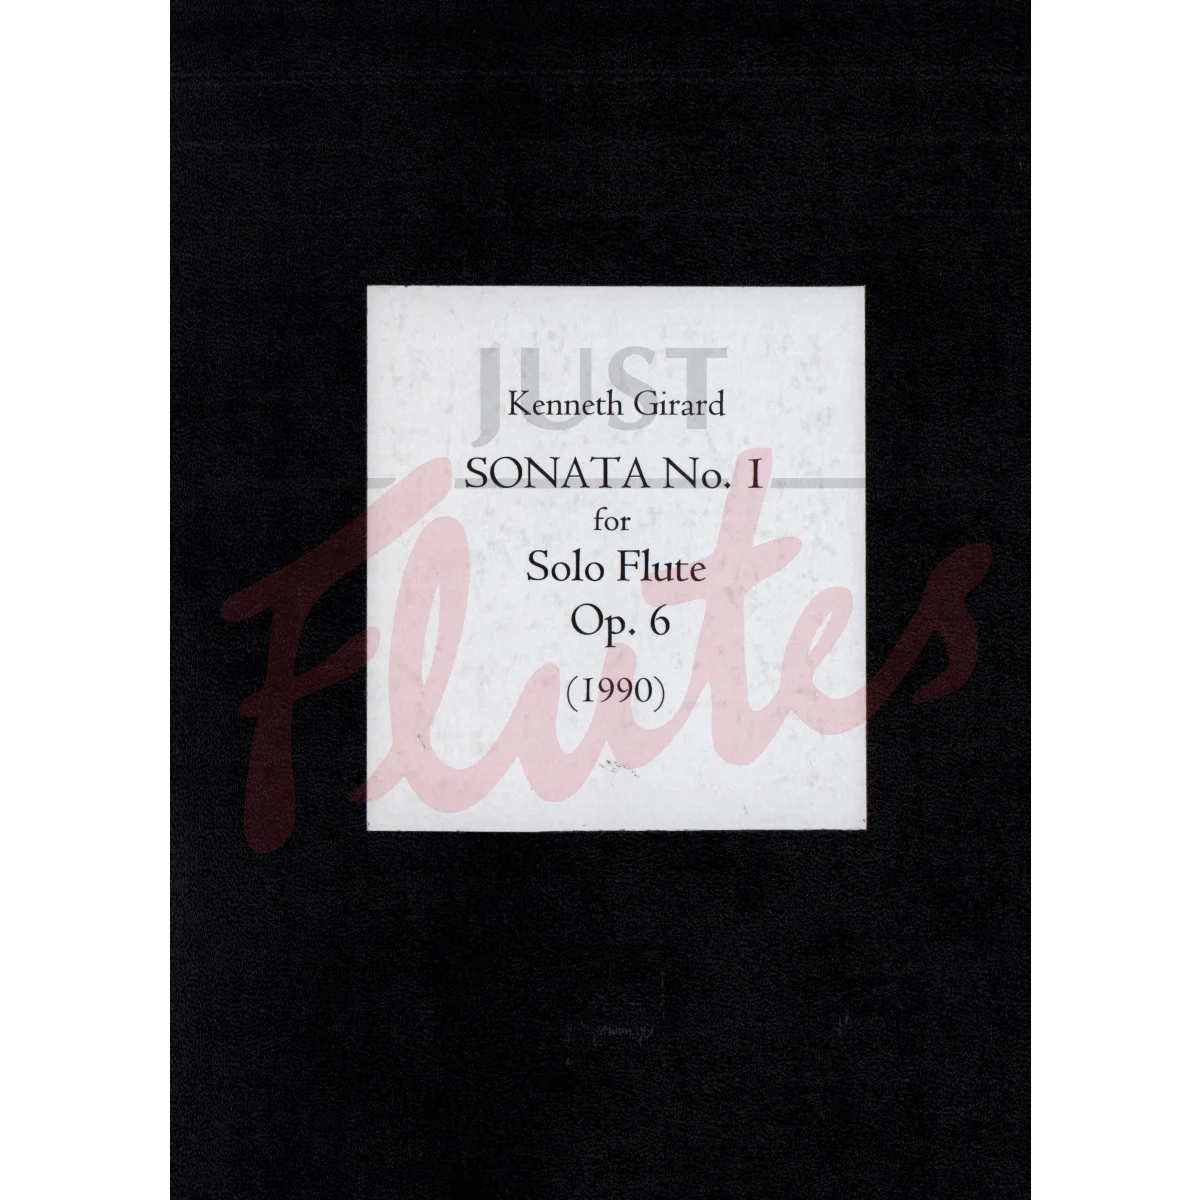 Sonata No. 1 for Solo Flute